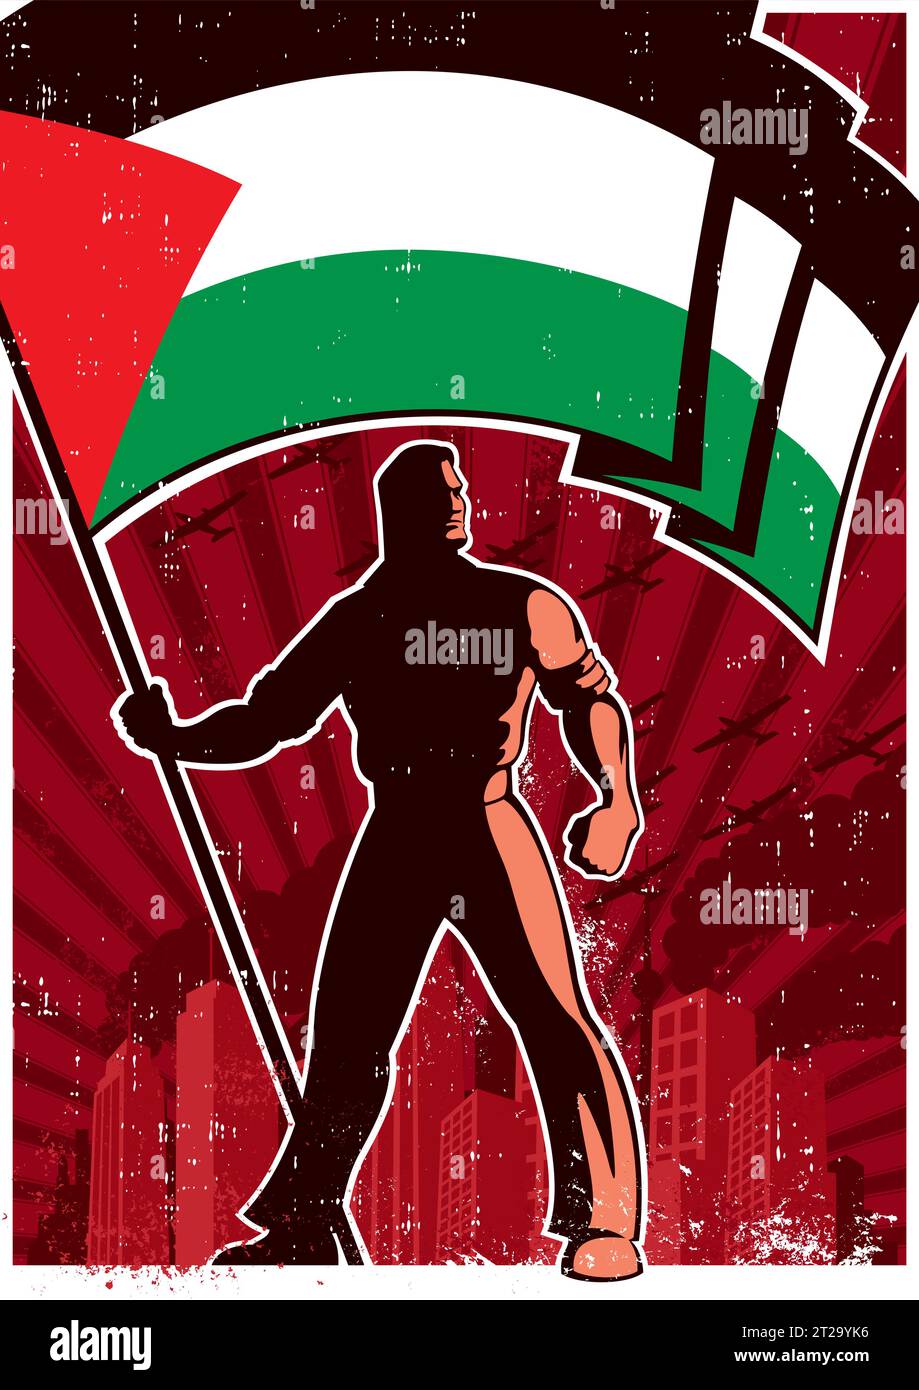 Poster in stile vintage con una figura potente in piedi con la bandiera palestinese in uno sfondo urbano e grintoso, che crea una rappresentazione visiva sorprendente del nazionalismo e dell'orgoglio. Illustrazione Vettoriale